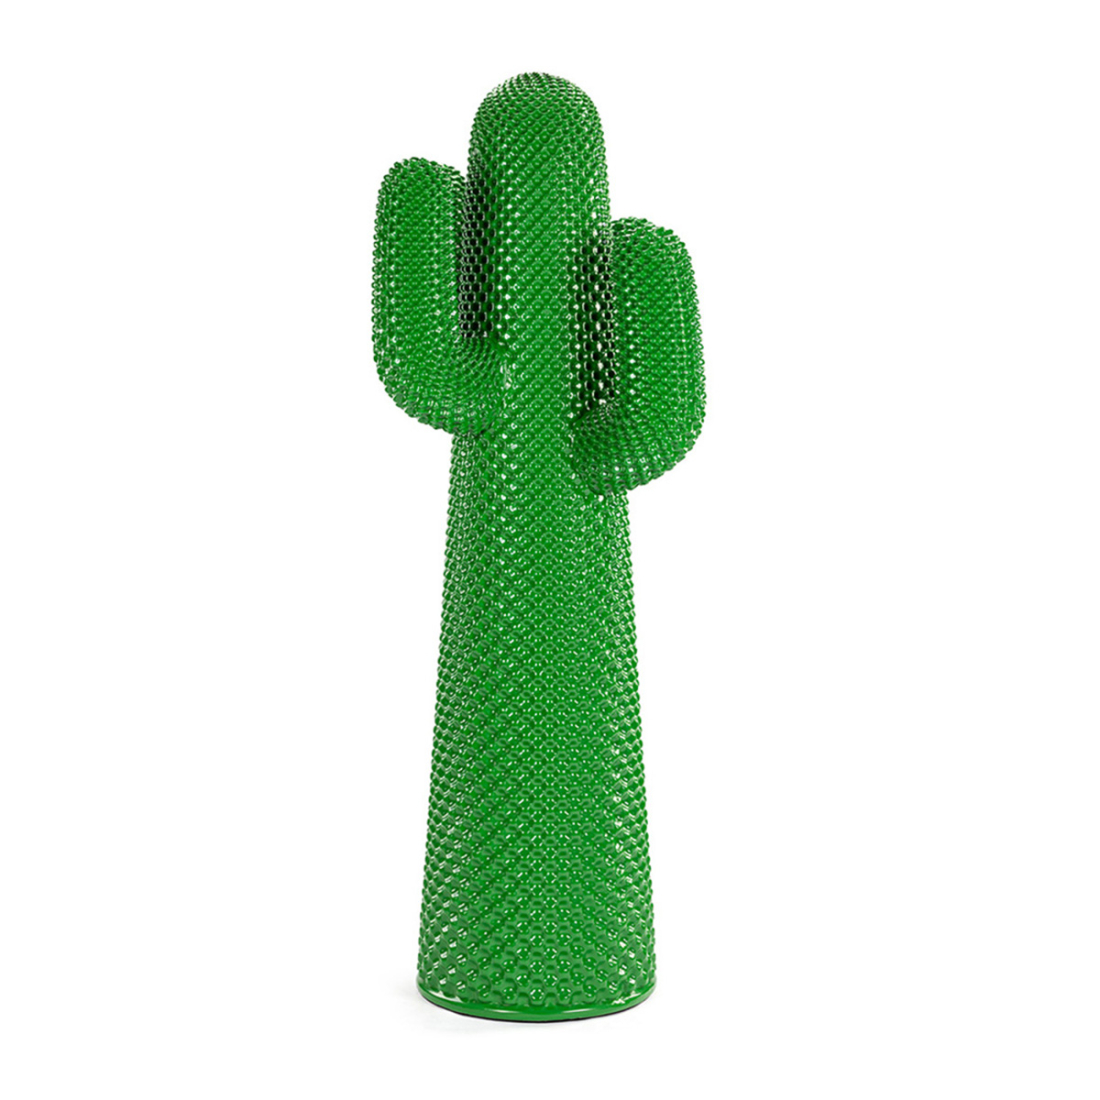 Drocco & Mello Sculptural Cactus Coat Rack